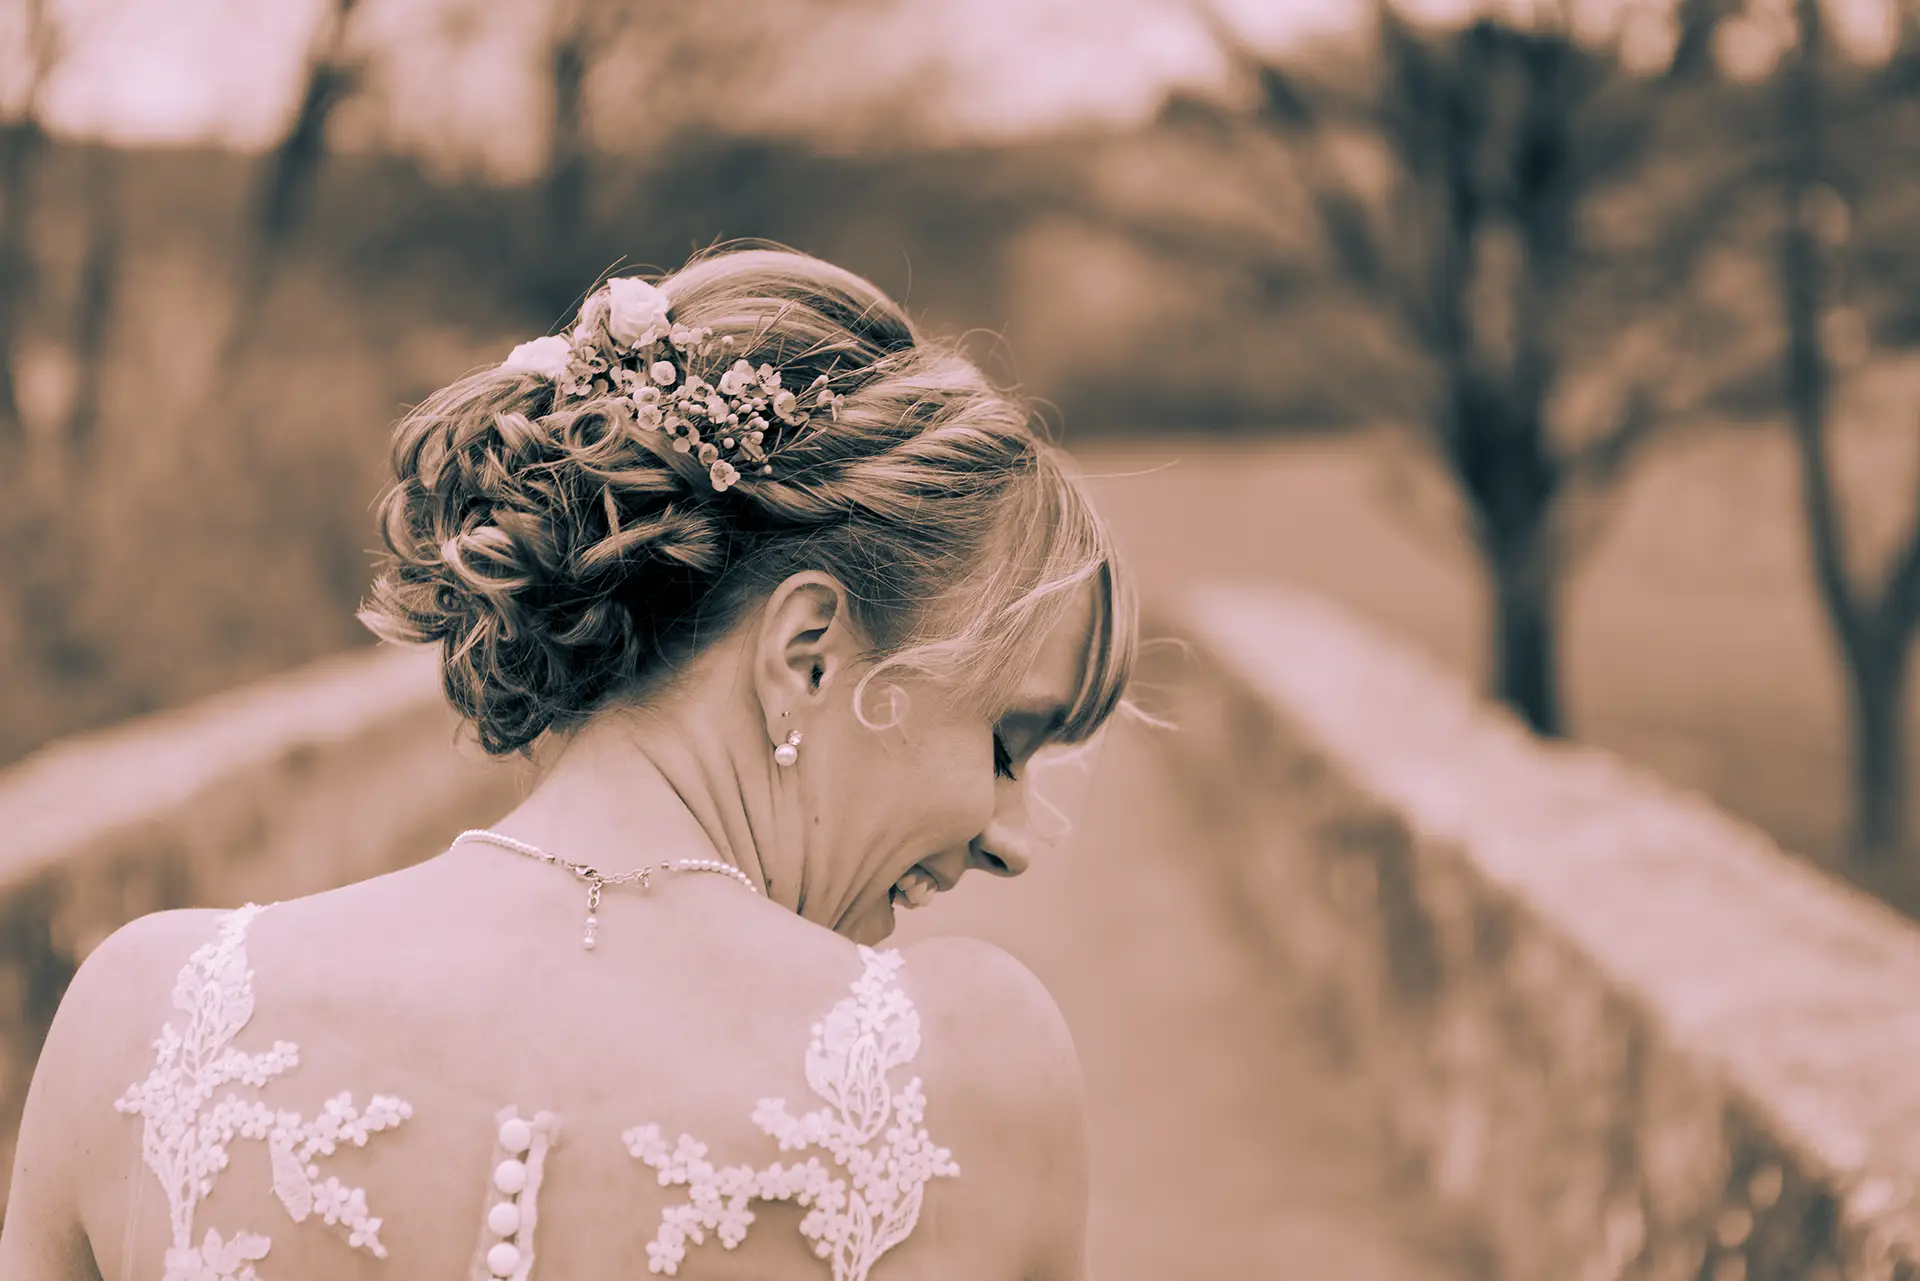 Die Braut von hinten in einem schwarz-weiß Bild